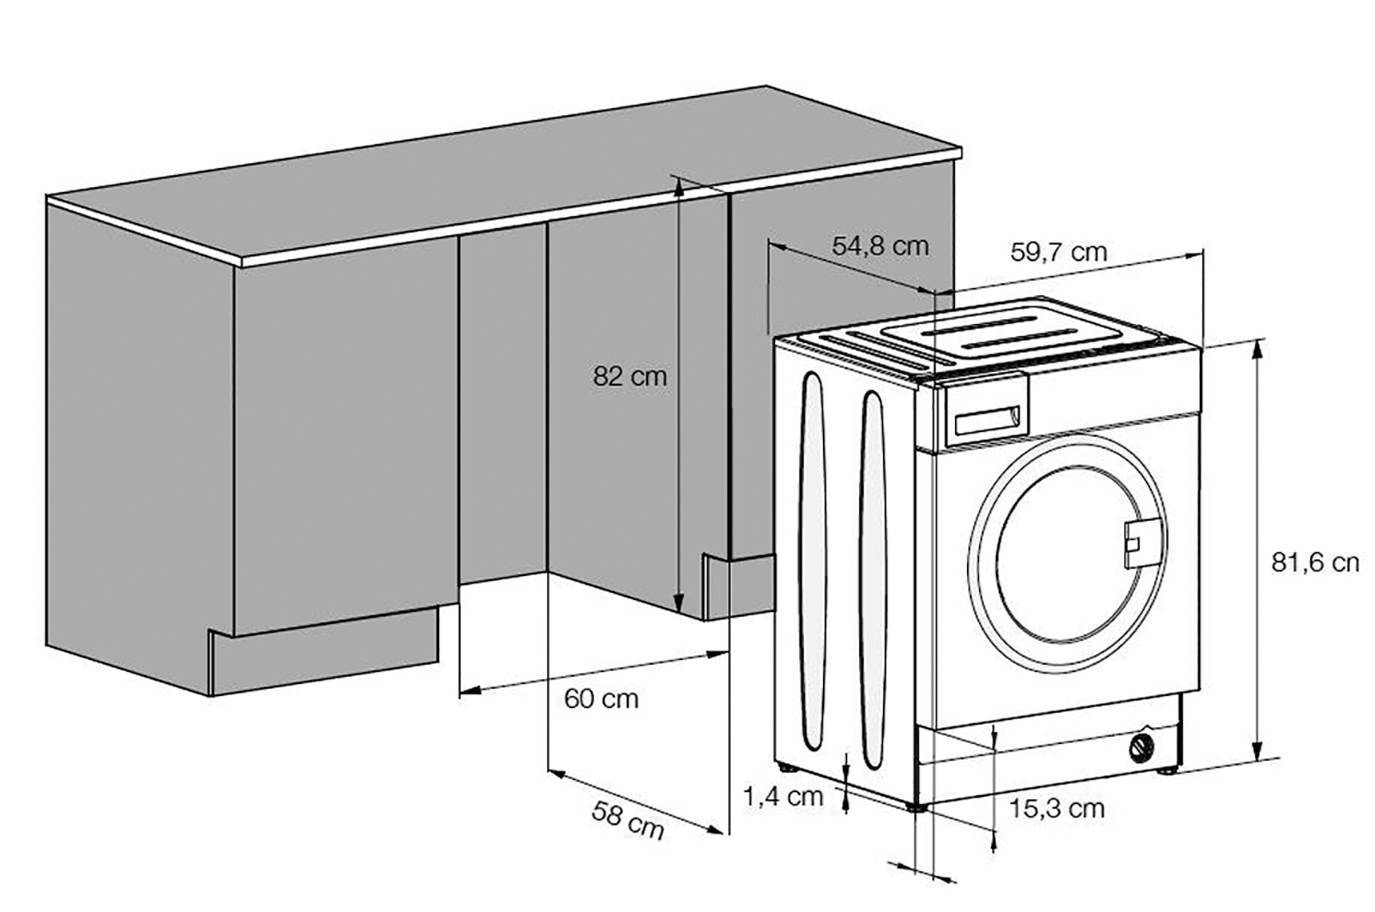 Размеры стиральной машины: высота, ширина, вес, глубина, стандарты